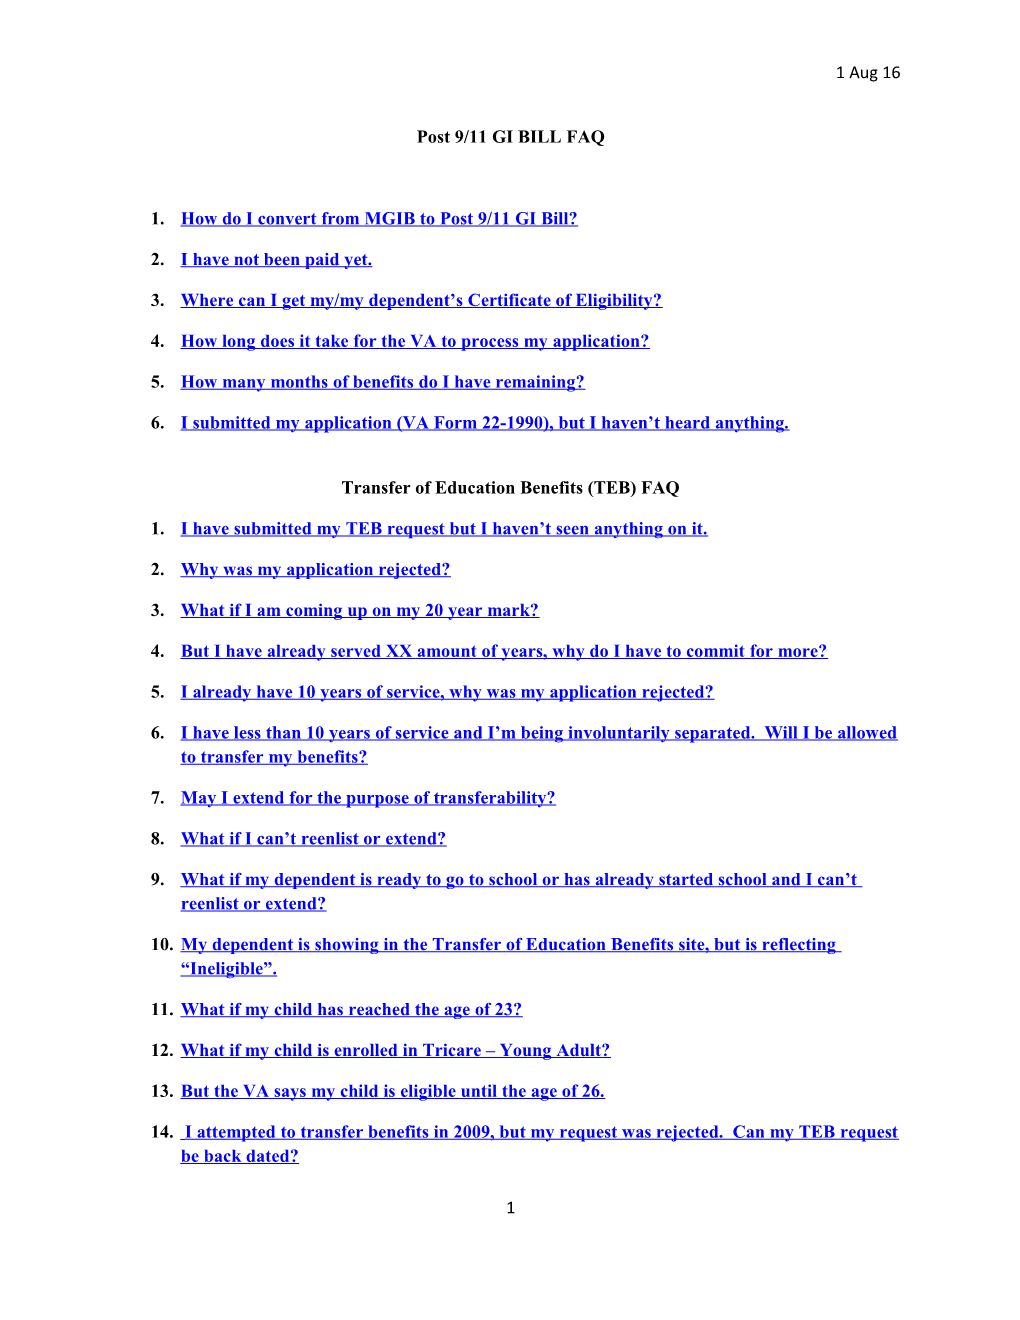 Post 9/11 GI BILL FAQ